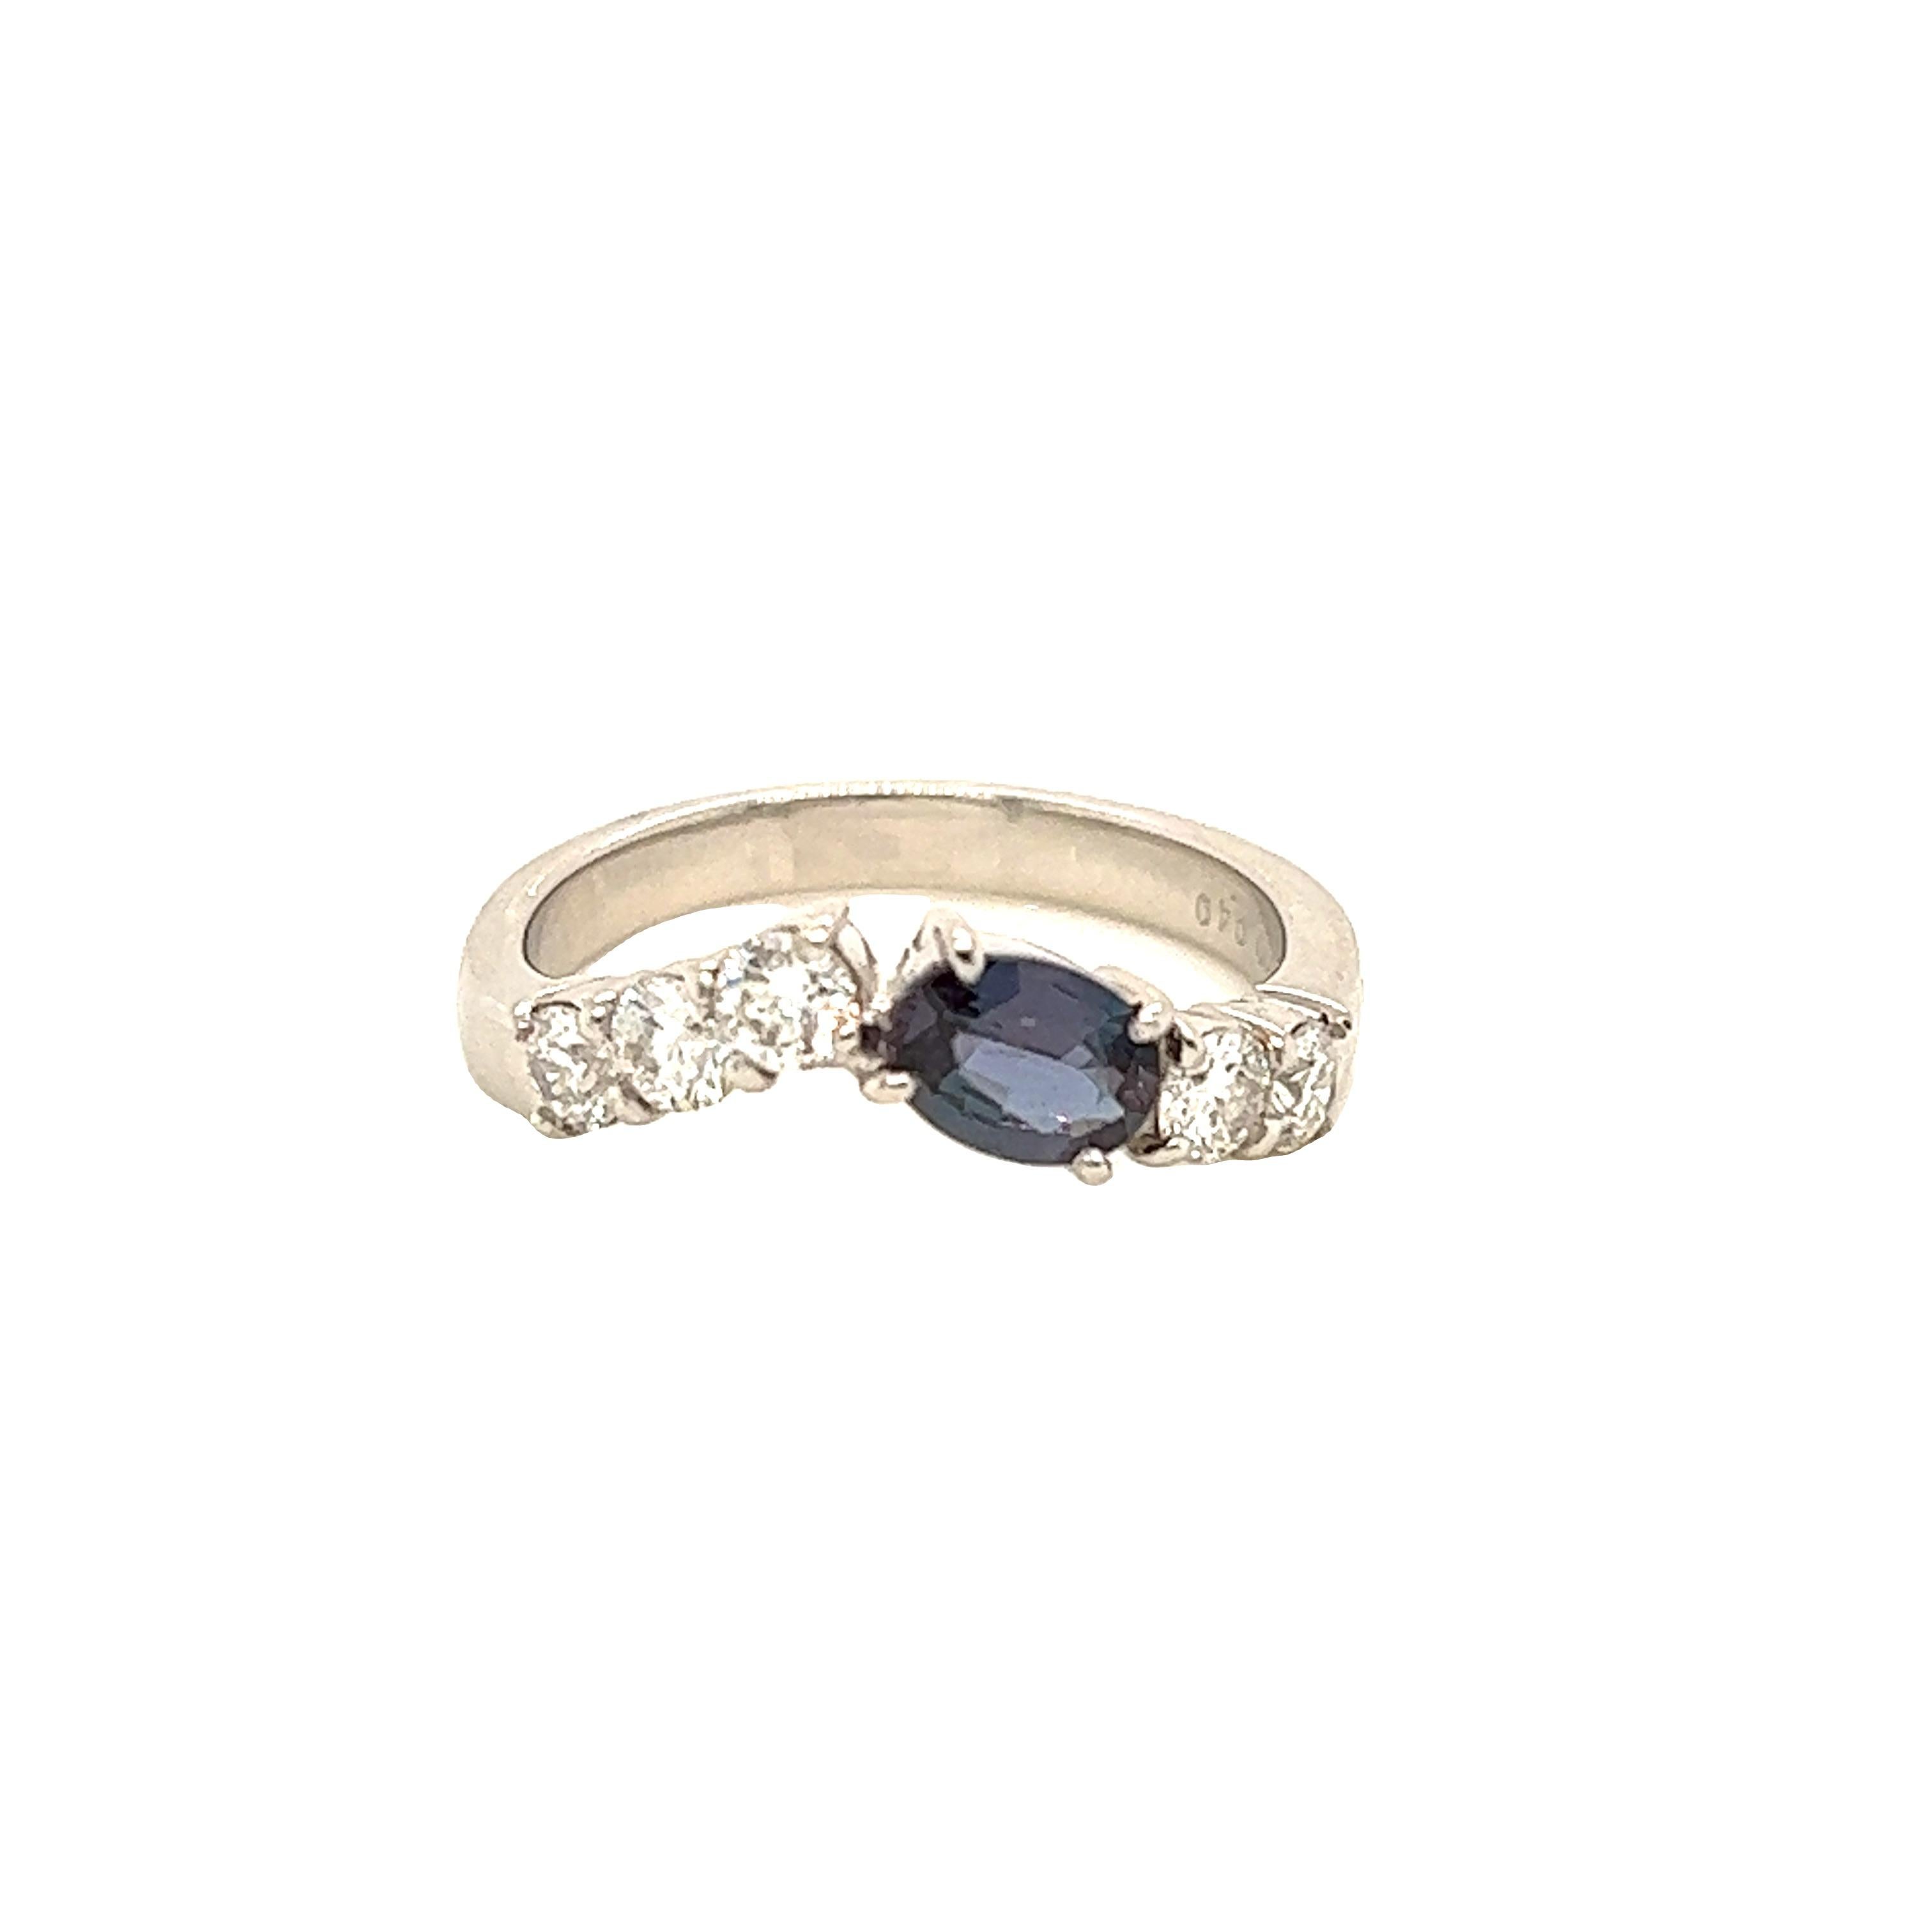 Dies ist ein wunderschöner ovaler Alexandrit in AAA-Qualität, der von zierlichen Diamanten umgeben ist und in einer Platinfassung im Vintage-Stil gefasst ist. Dieser Ring enthält einen natürlichen ovalen Alexandriten von 0.40 Karat, der vom